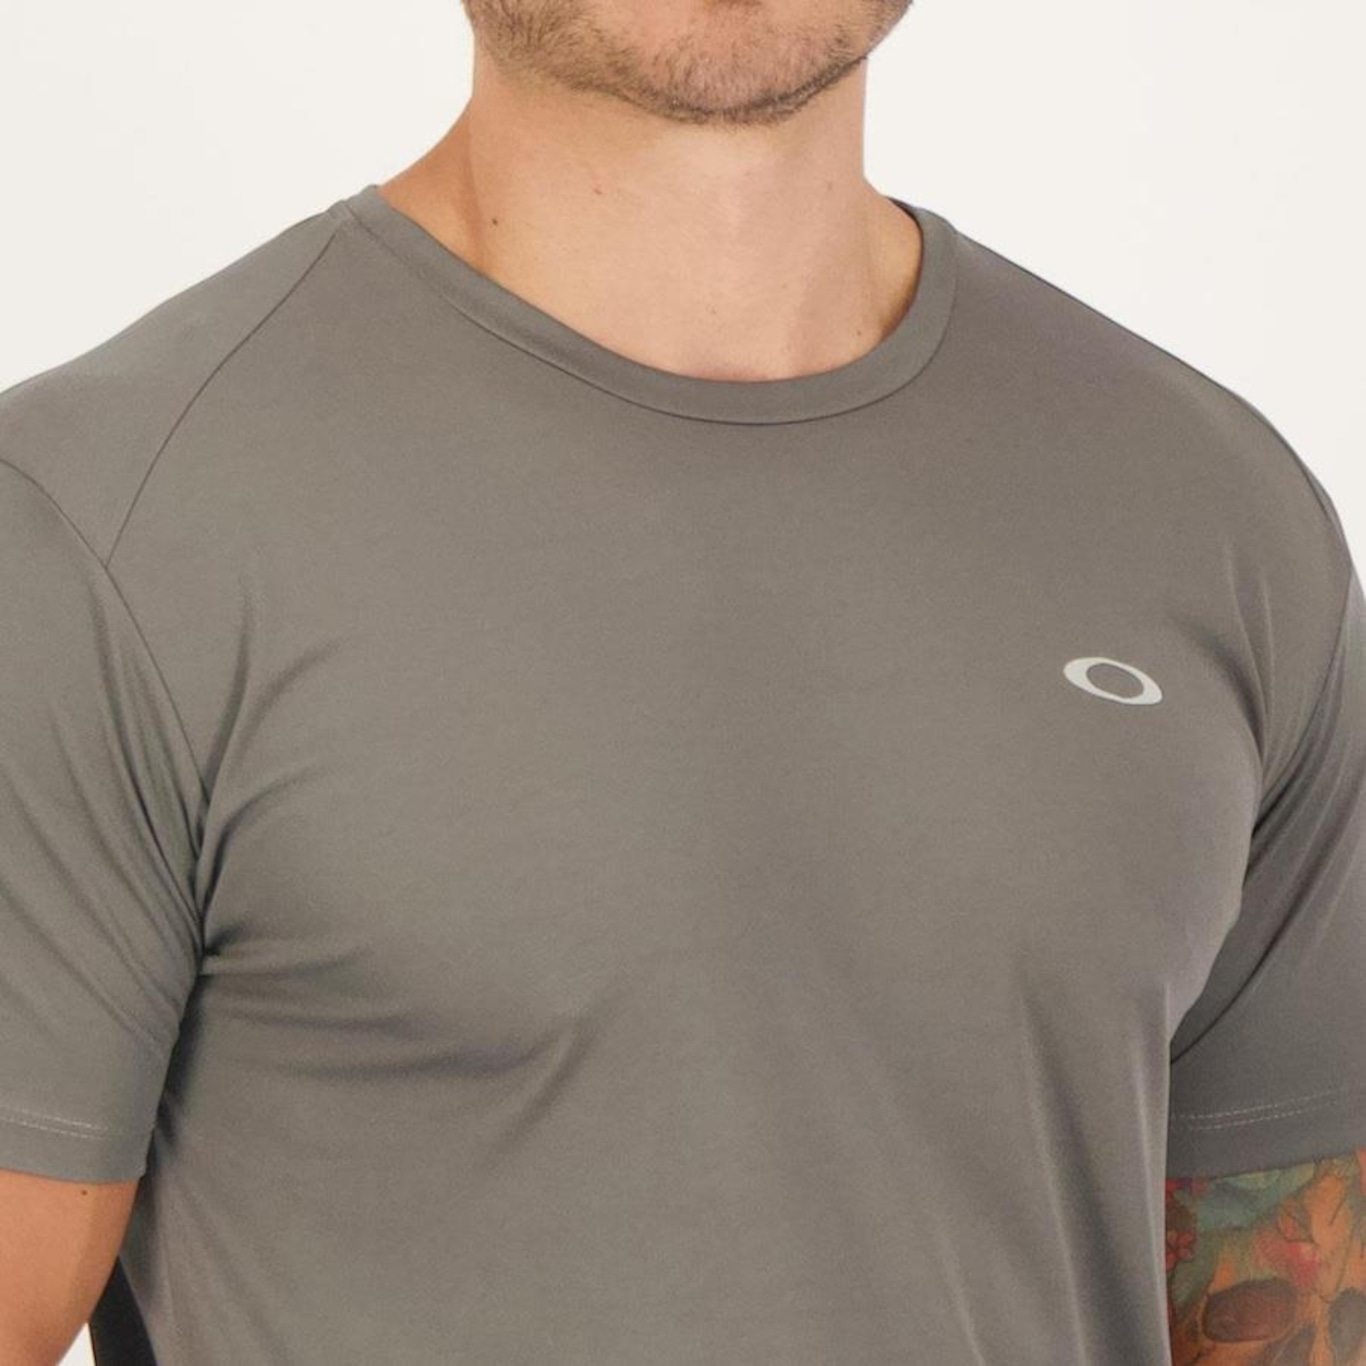 Camiseta Oakley Daily Sport Iii - Masculina em Promoção